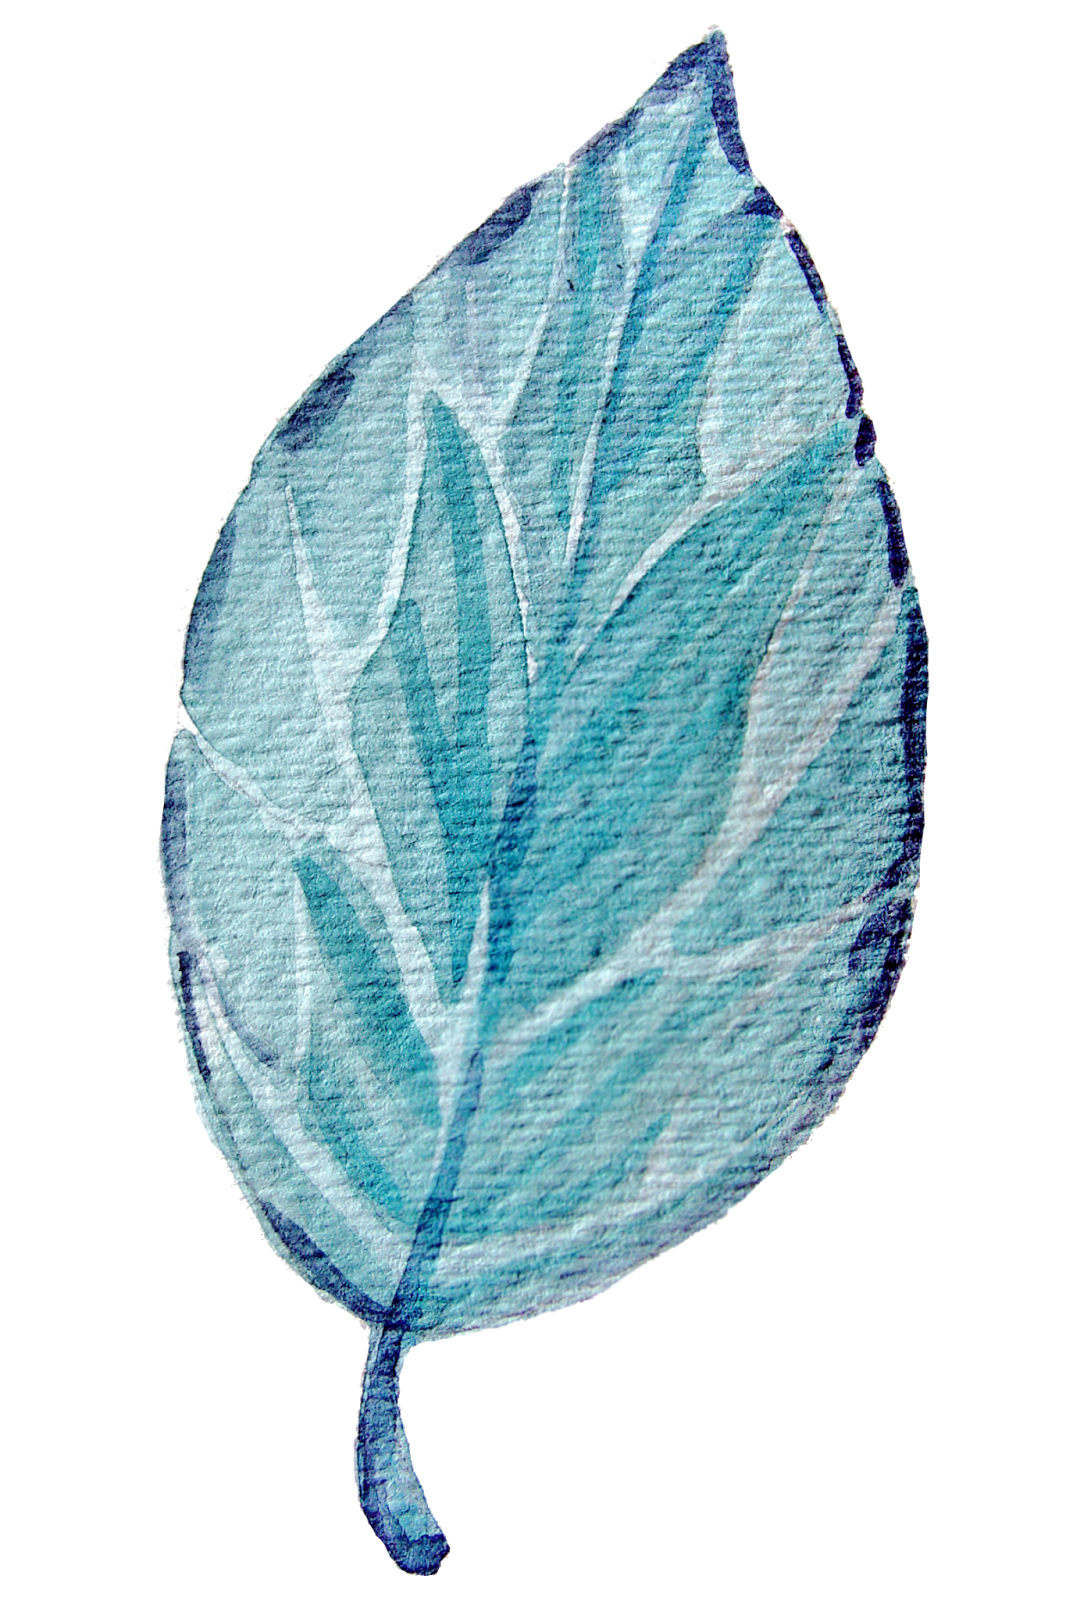 blue leaf cut out transparent photo #9881